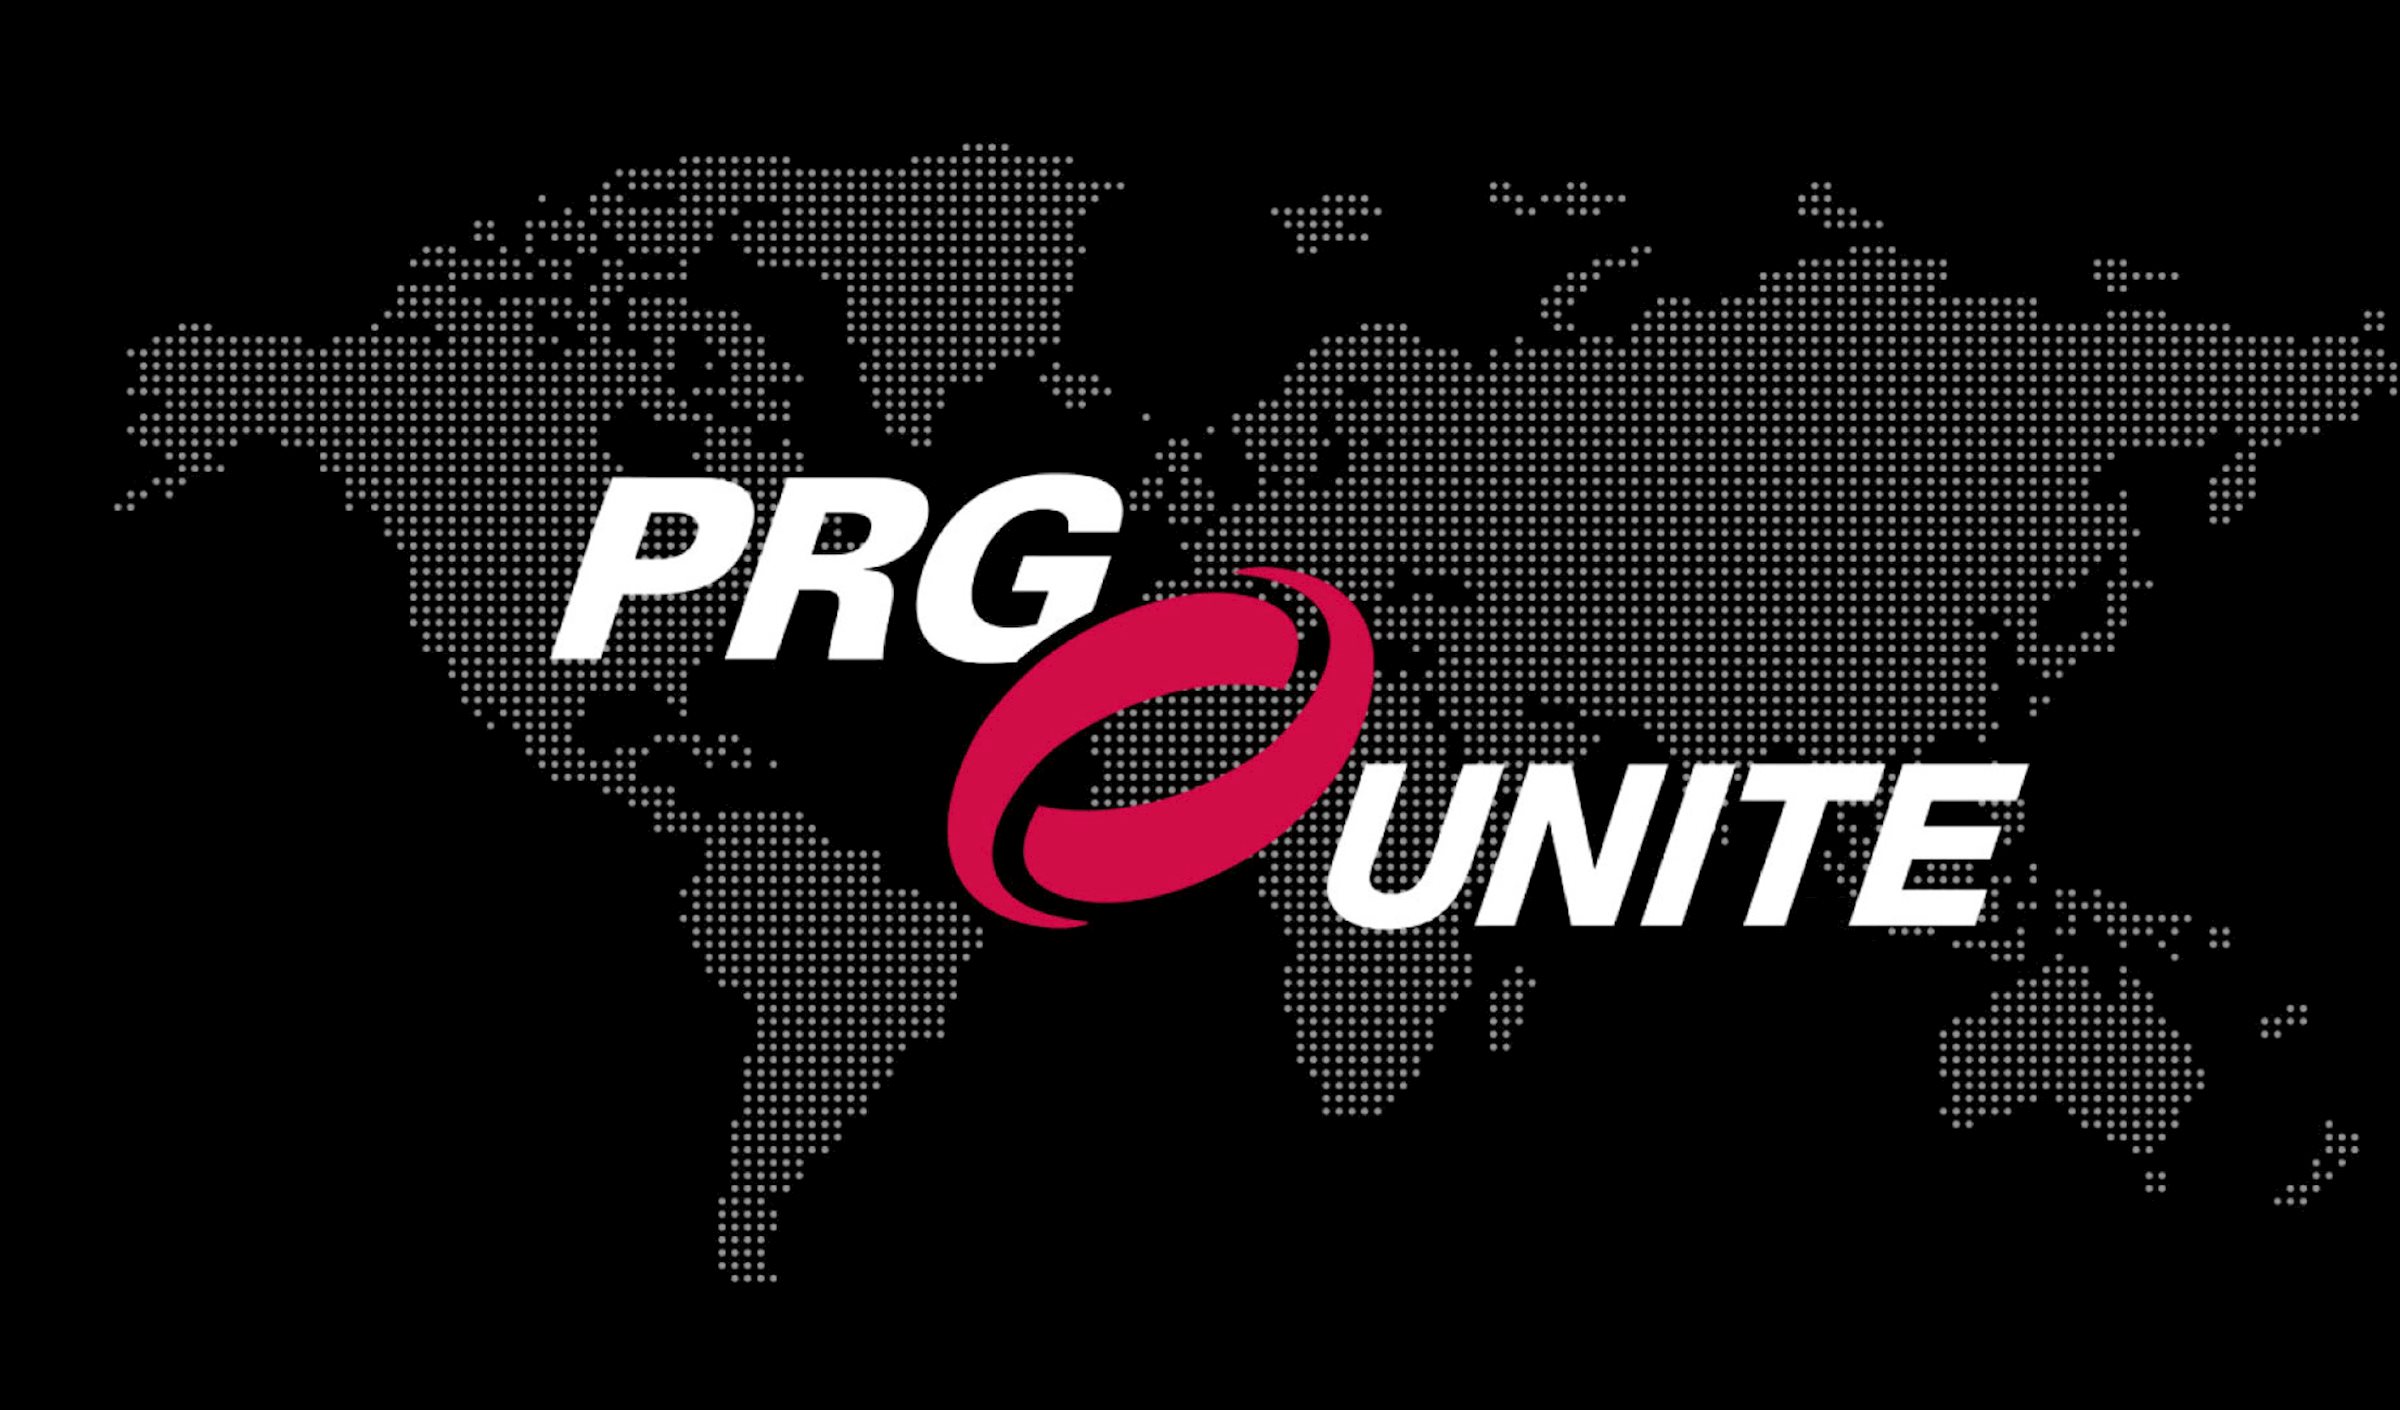 Nueva iniciativa PRG: PRG UNITE. Un evento inspirador diseñado para reunir a todas nuestras regiones de todo el mundo en un solo lugar, para compartir y desarrollar nuestra oferta global única.